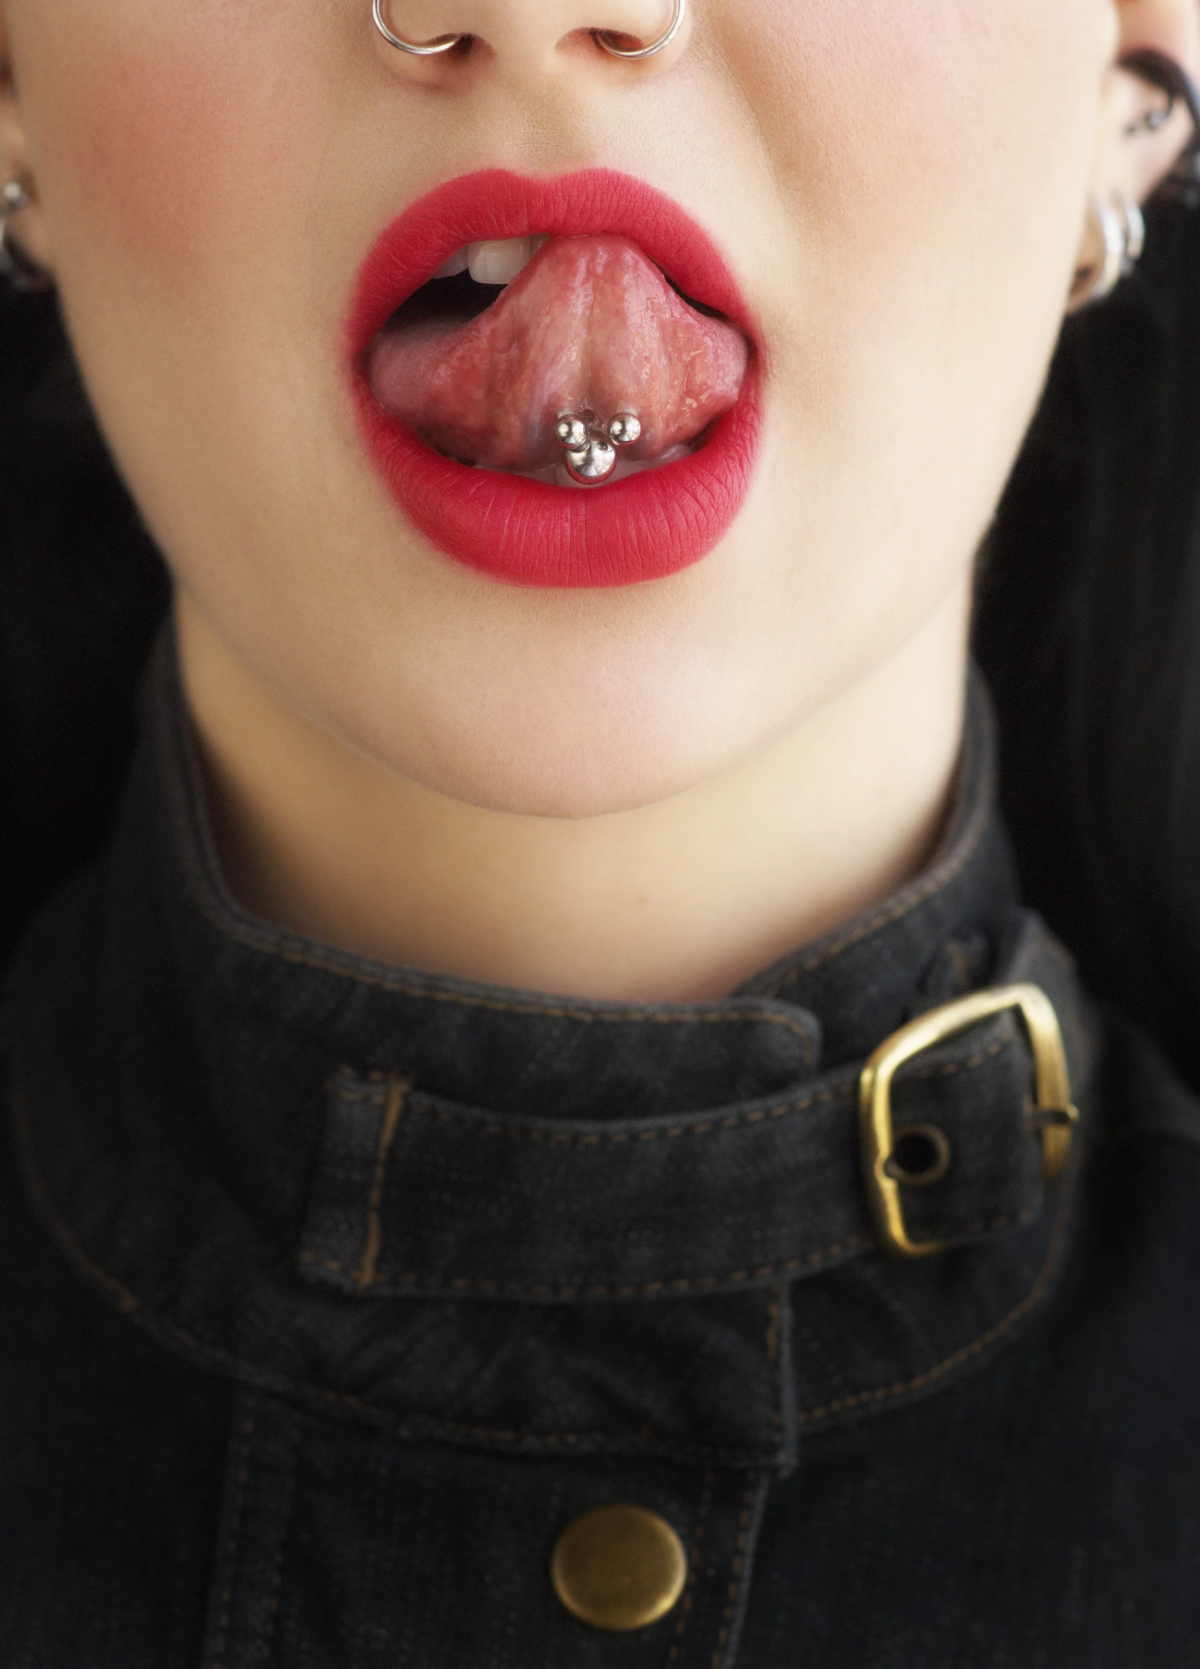 why do females get tongue piercings.jpg